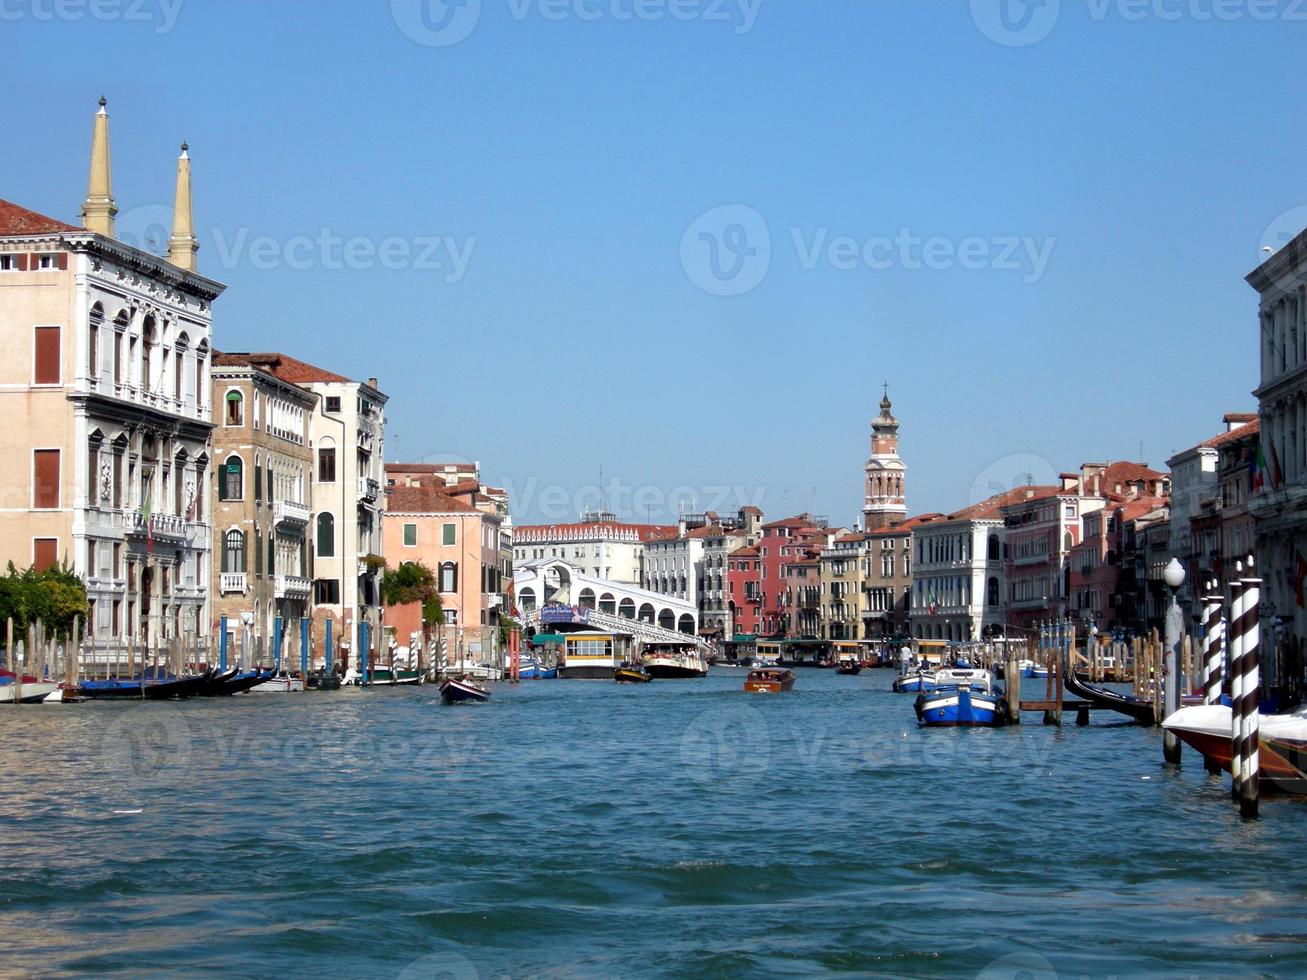 città di venezia venezia in italia foto